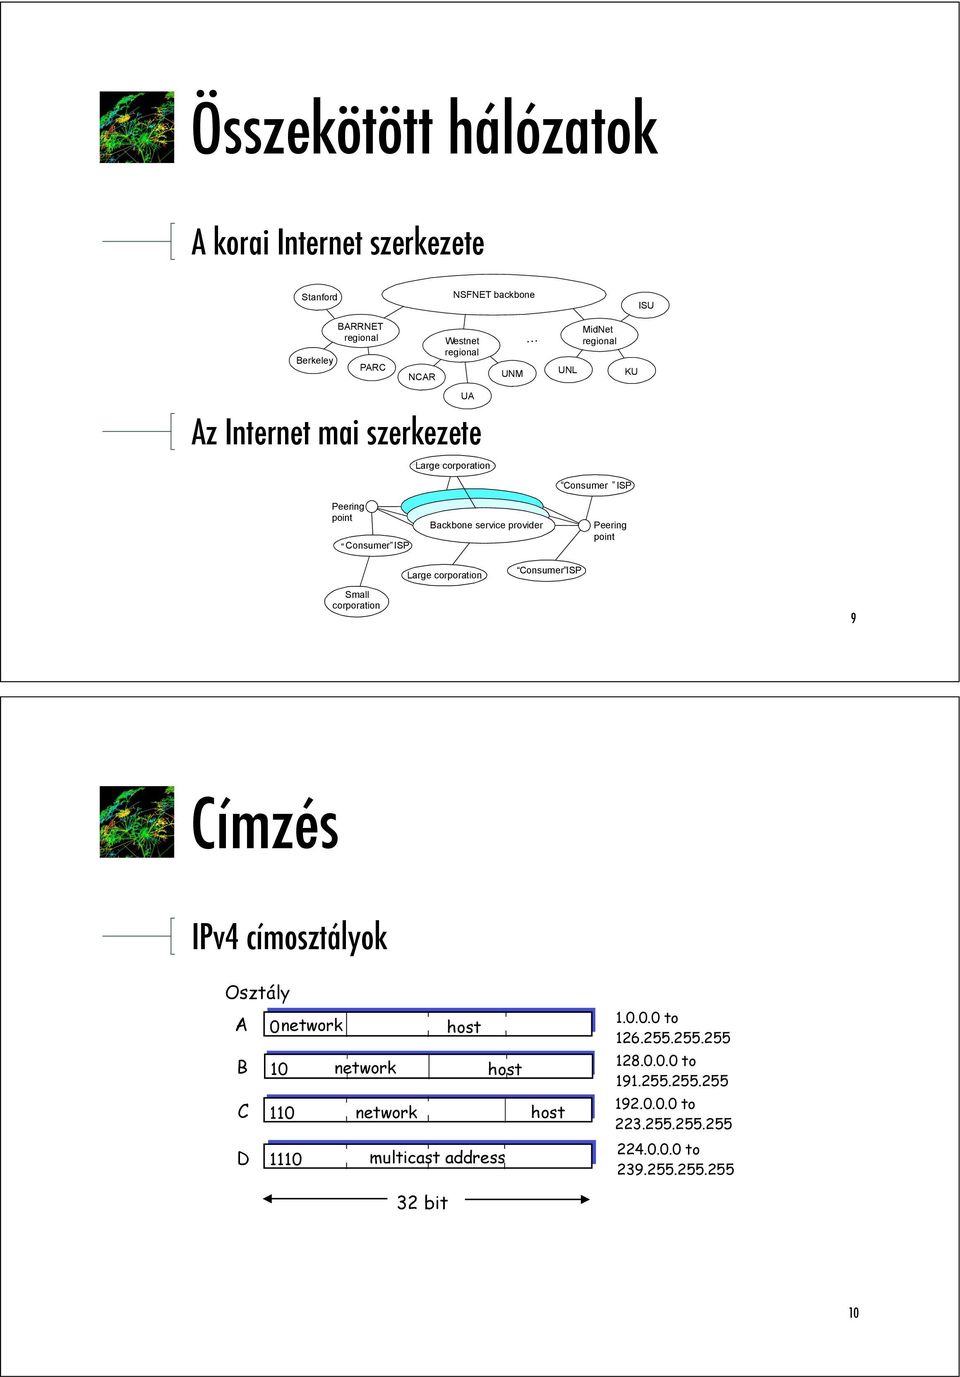 Peering point Large corporation Consumer ISP Small corporation 9 Címzés IPv4 címosztályok Osztály A 0network host B 10 network host C 110